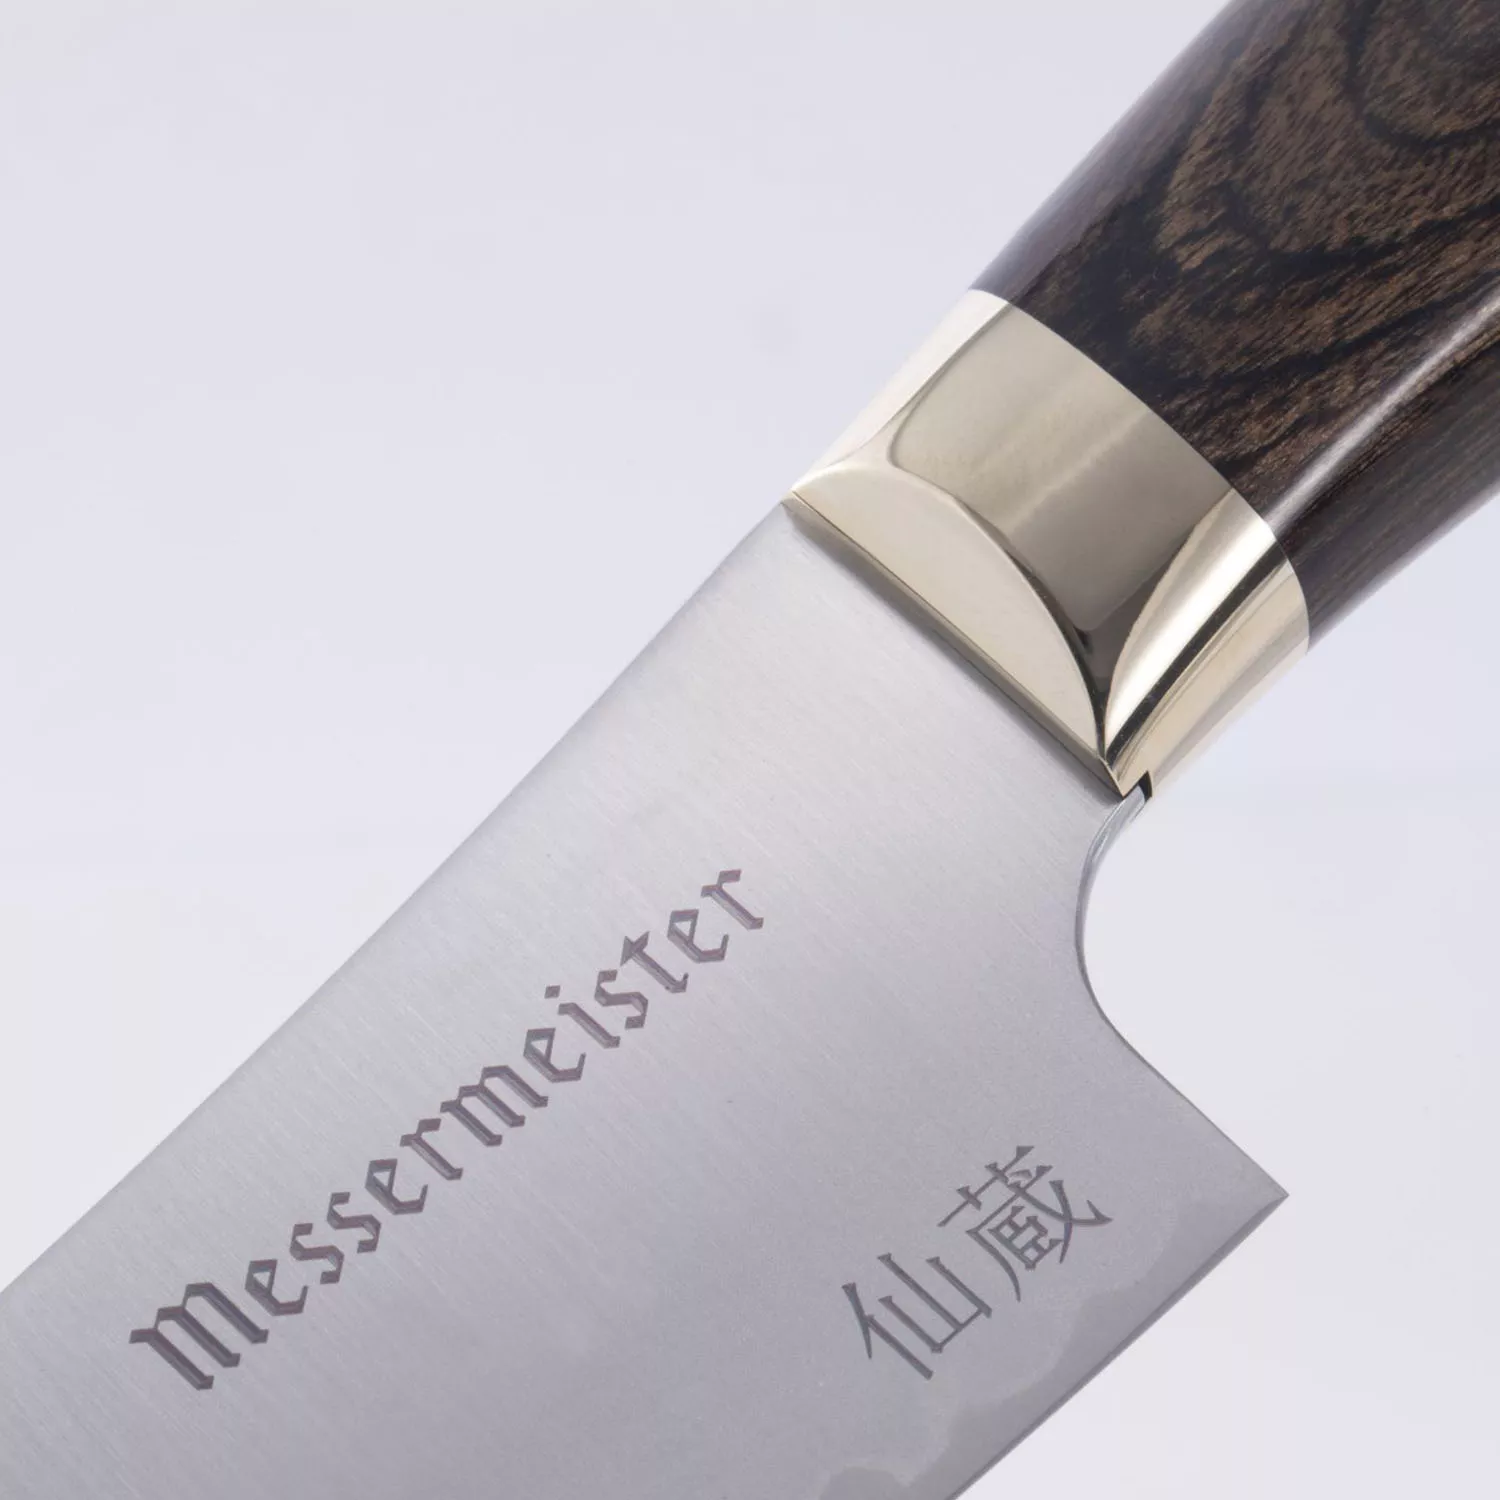 Messermeister Kawashima Utility Knife, 6"